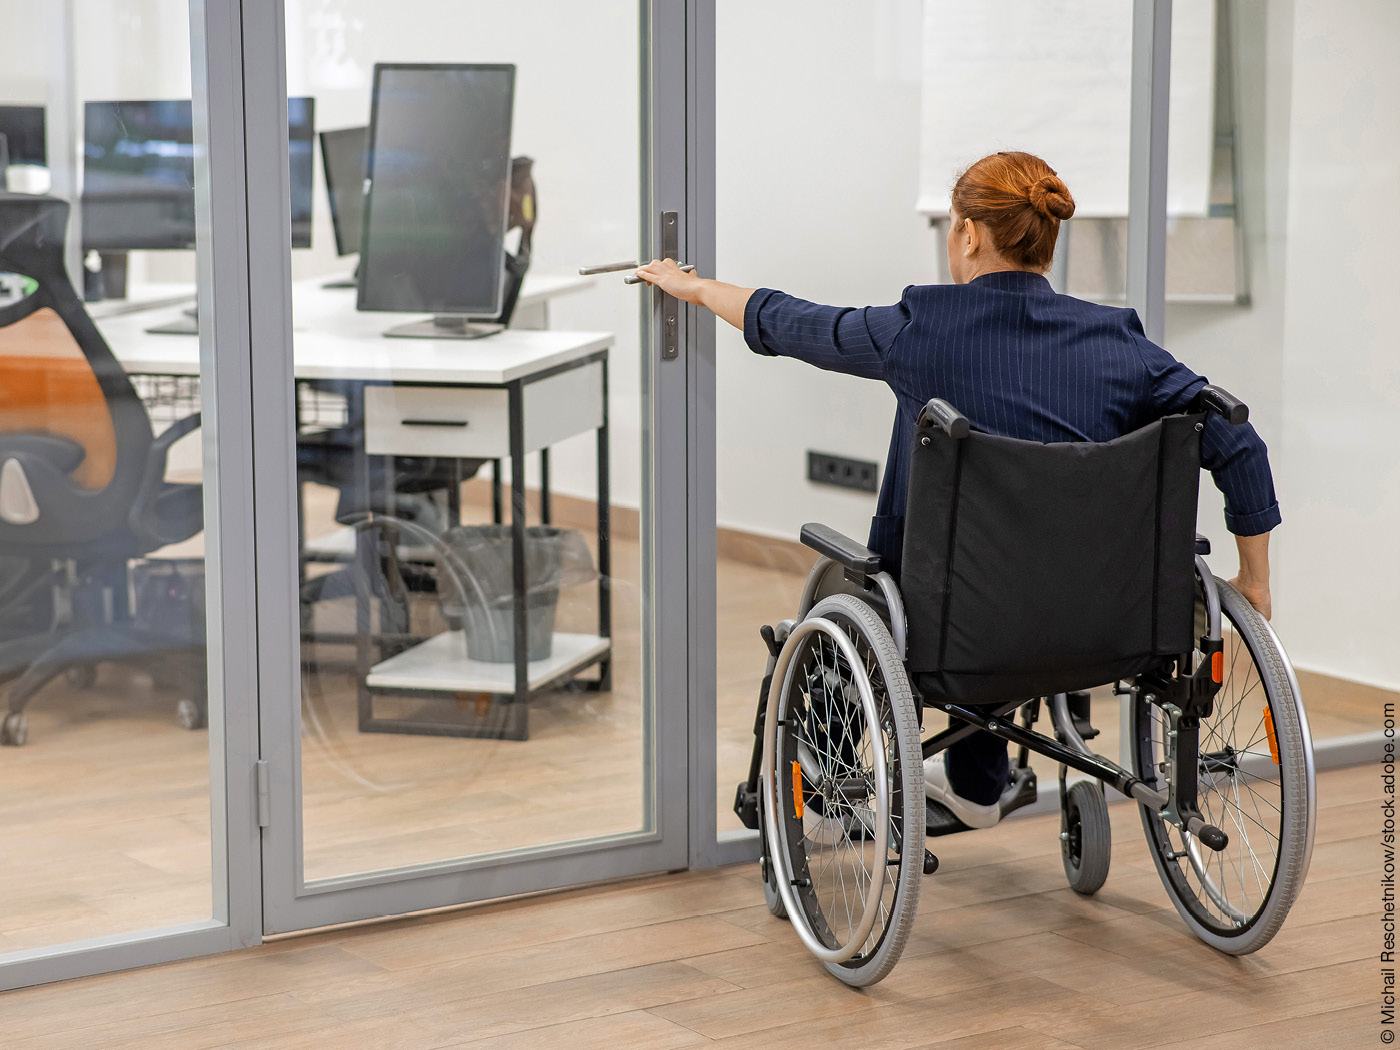 Frau im Rollstuhl versucht, eine verschlossene Glastür zu öffnen.